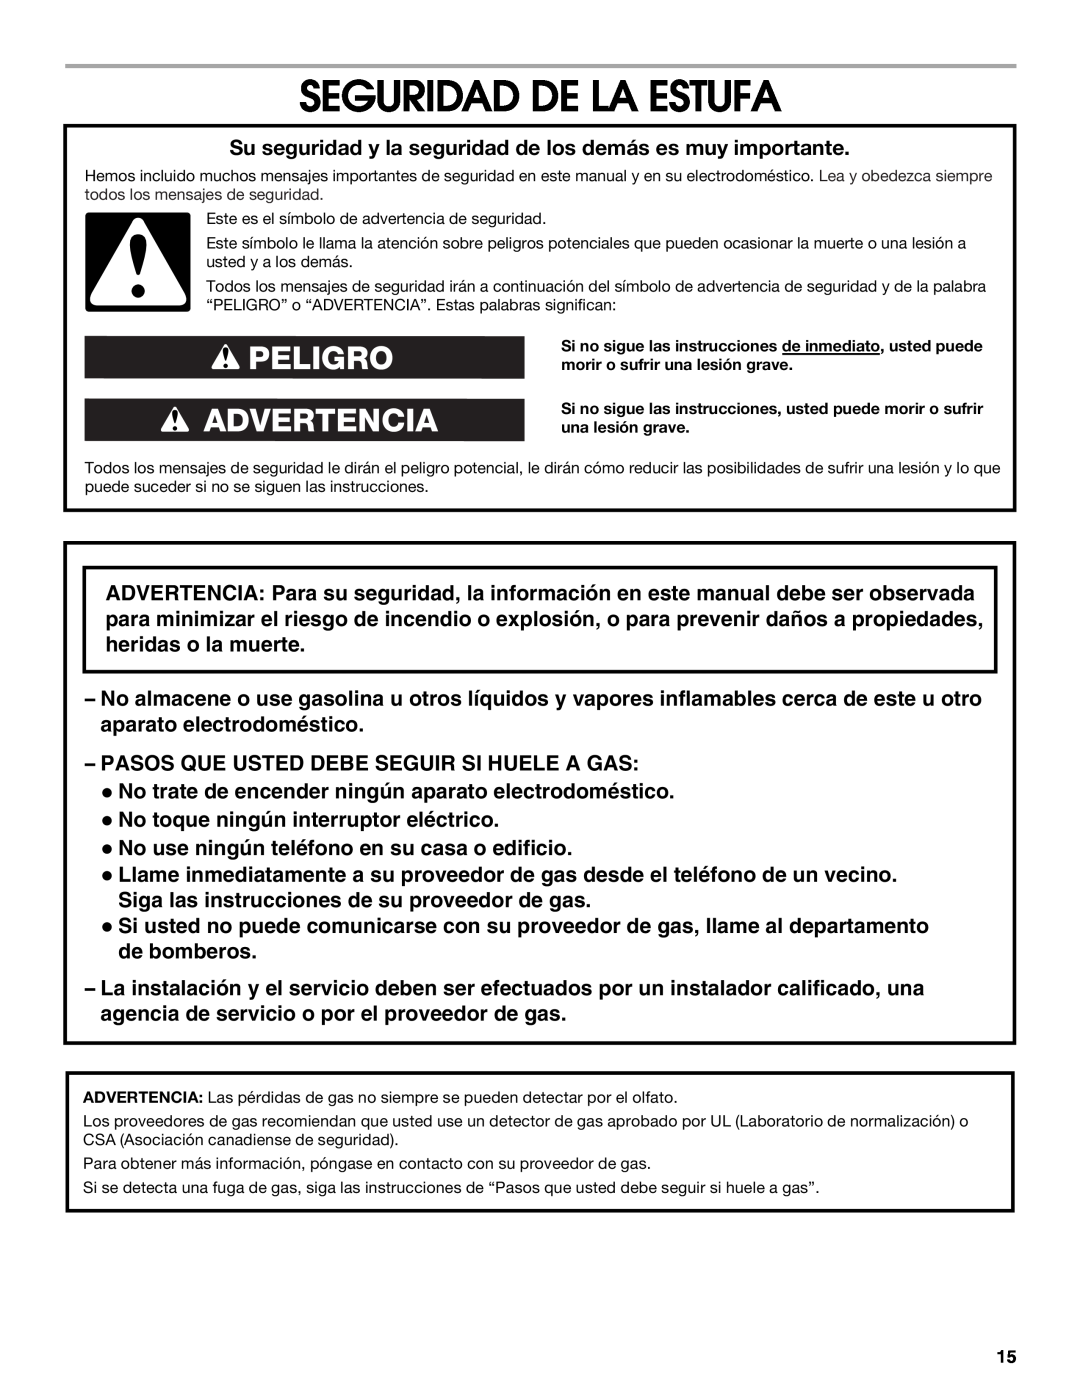 Estate W10121806C installation instructions Seguridad De La Estufa, Peligro Advertencia 